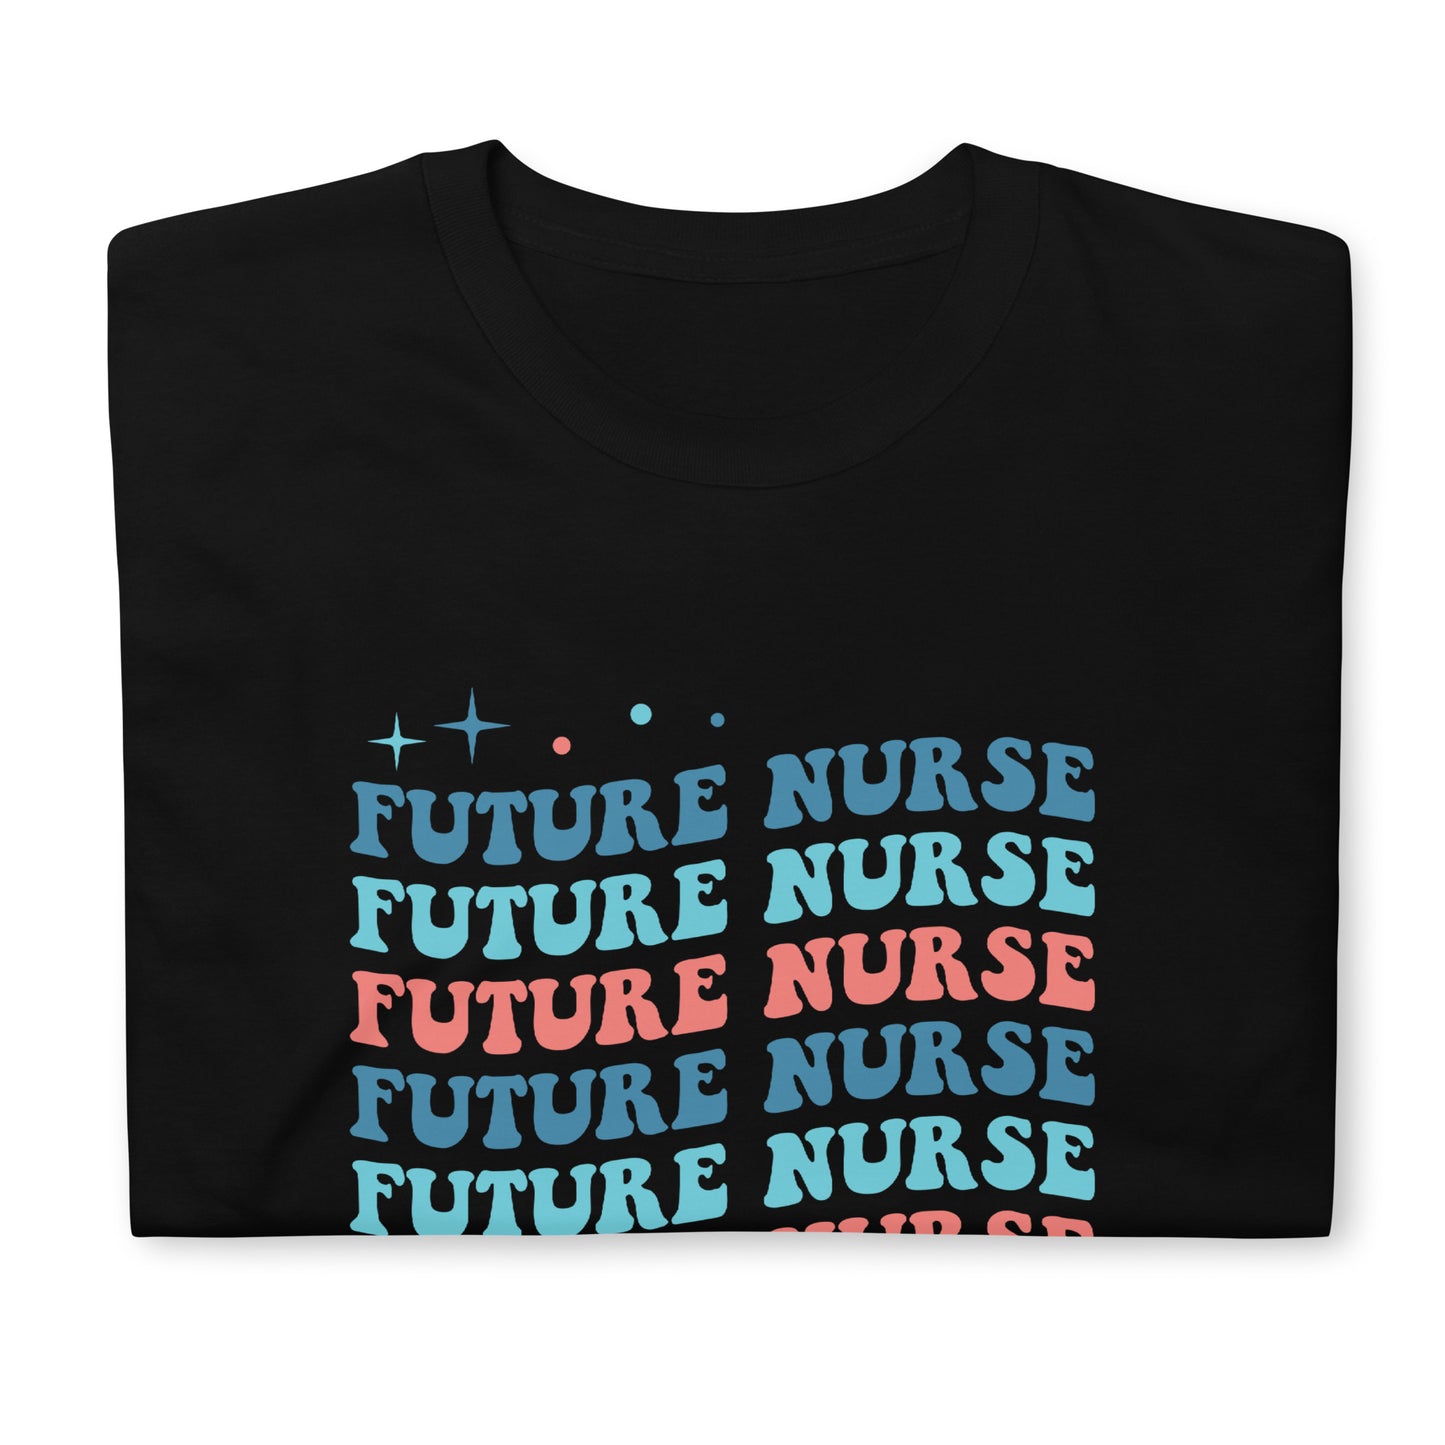 Future Nurse Shirt | Future Nurse Gift | Future Nurse Shirts For Work | Future Nurse Unisex T-shirt